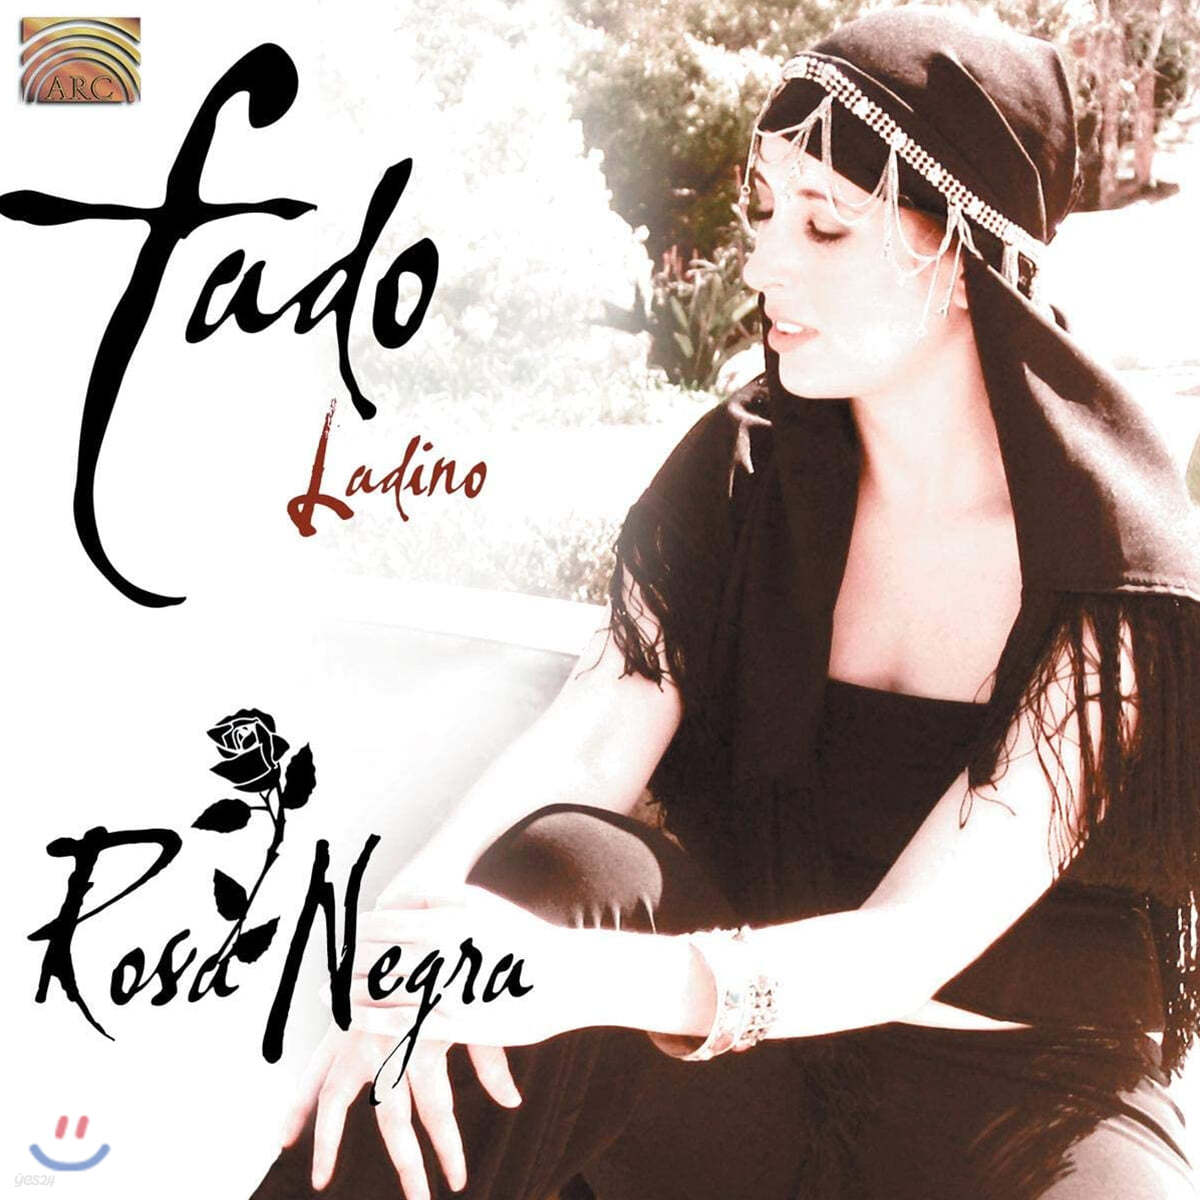 현대의 파두 음악 (Rosa Negra - Fado Ladino)